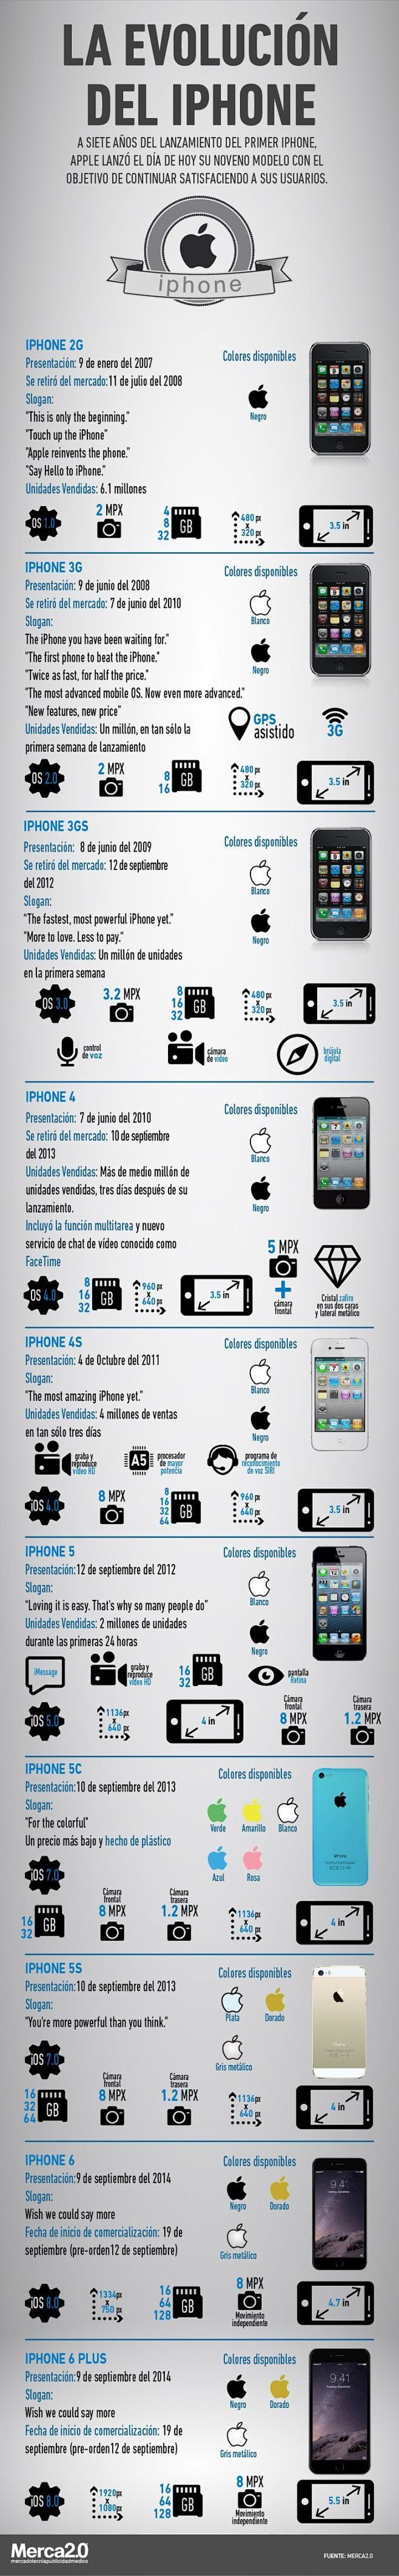 Evolución del iPhone...